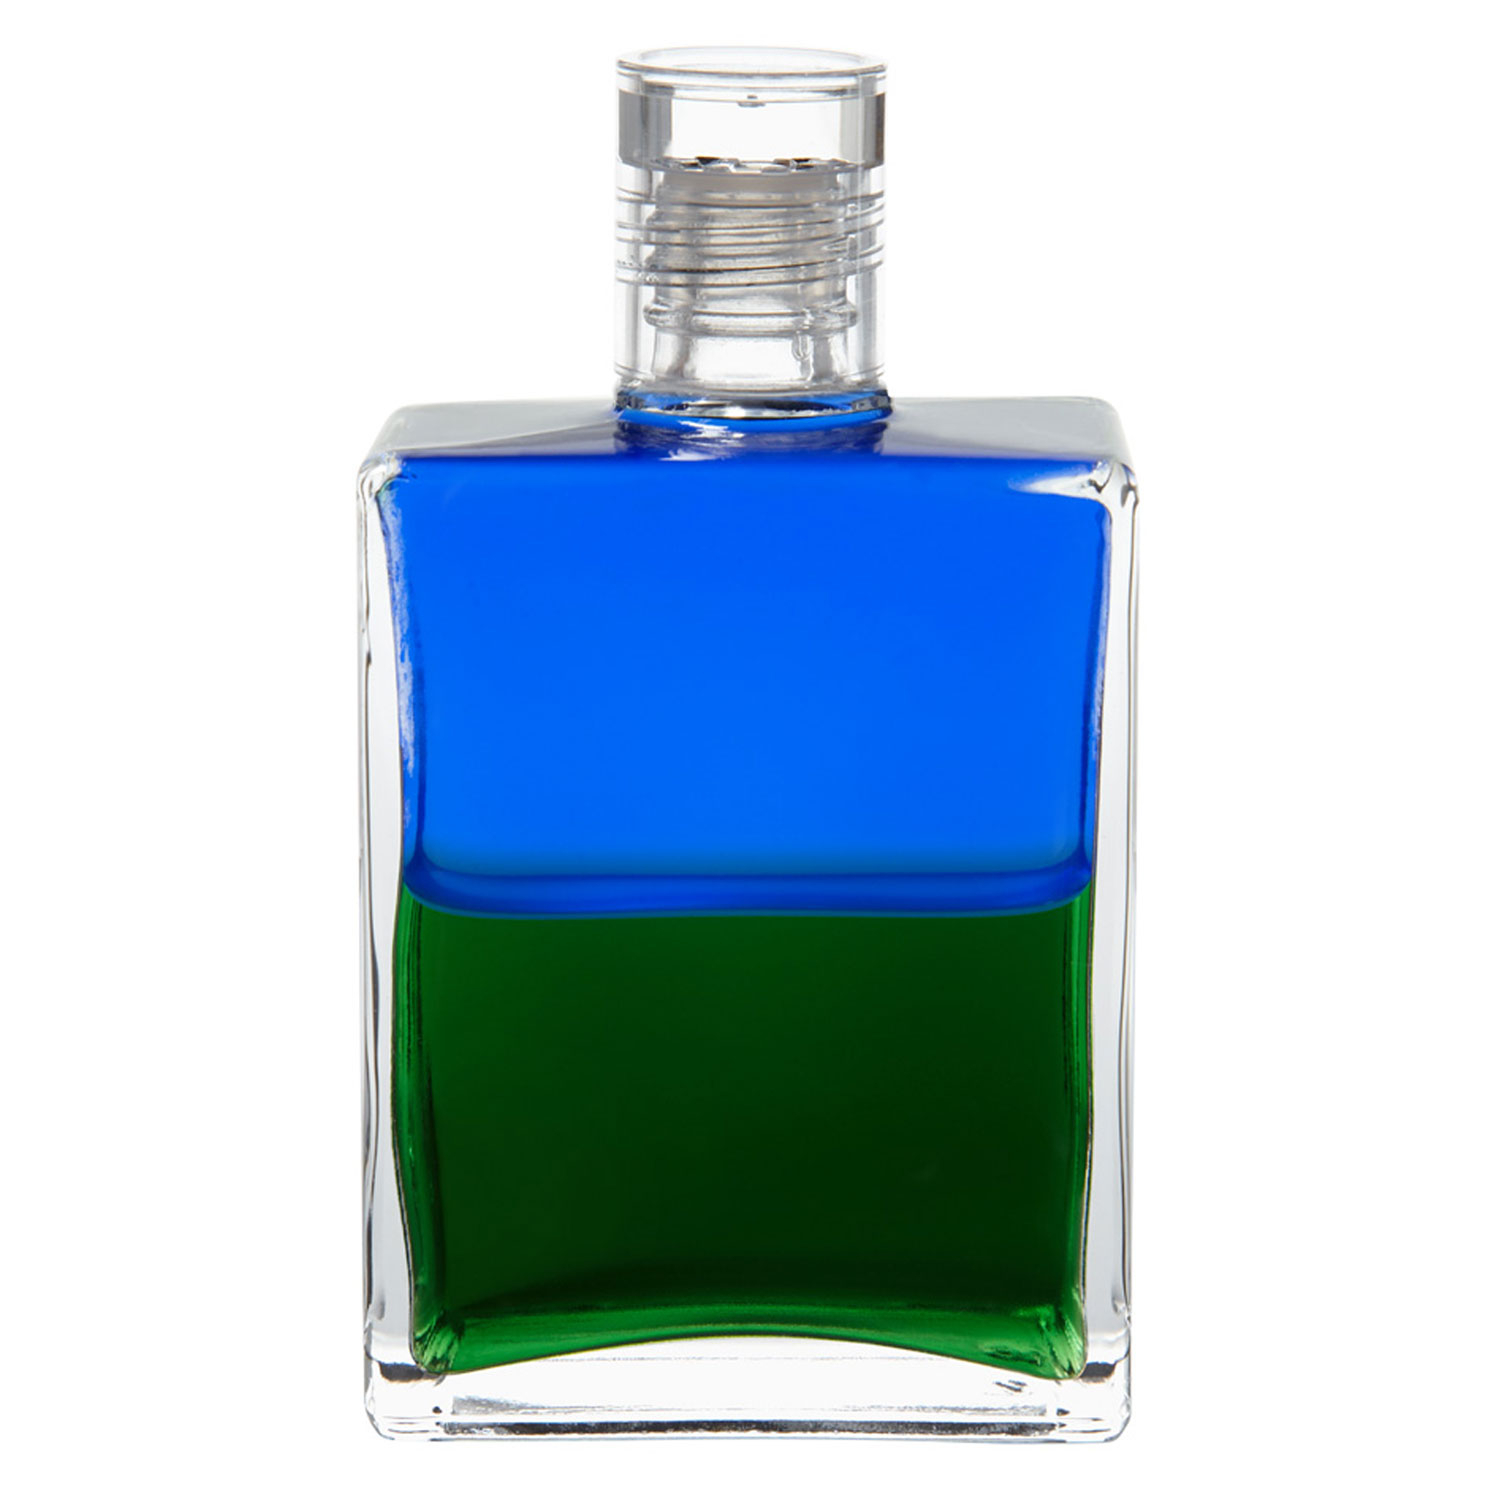 Equilibrium B3 "Atlanter-Flasche (Herzflasche)", Produktbild 1